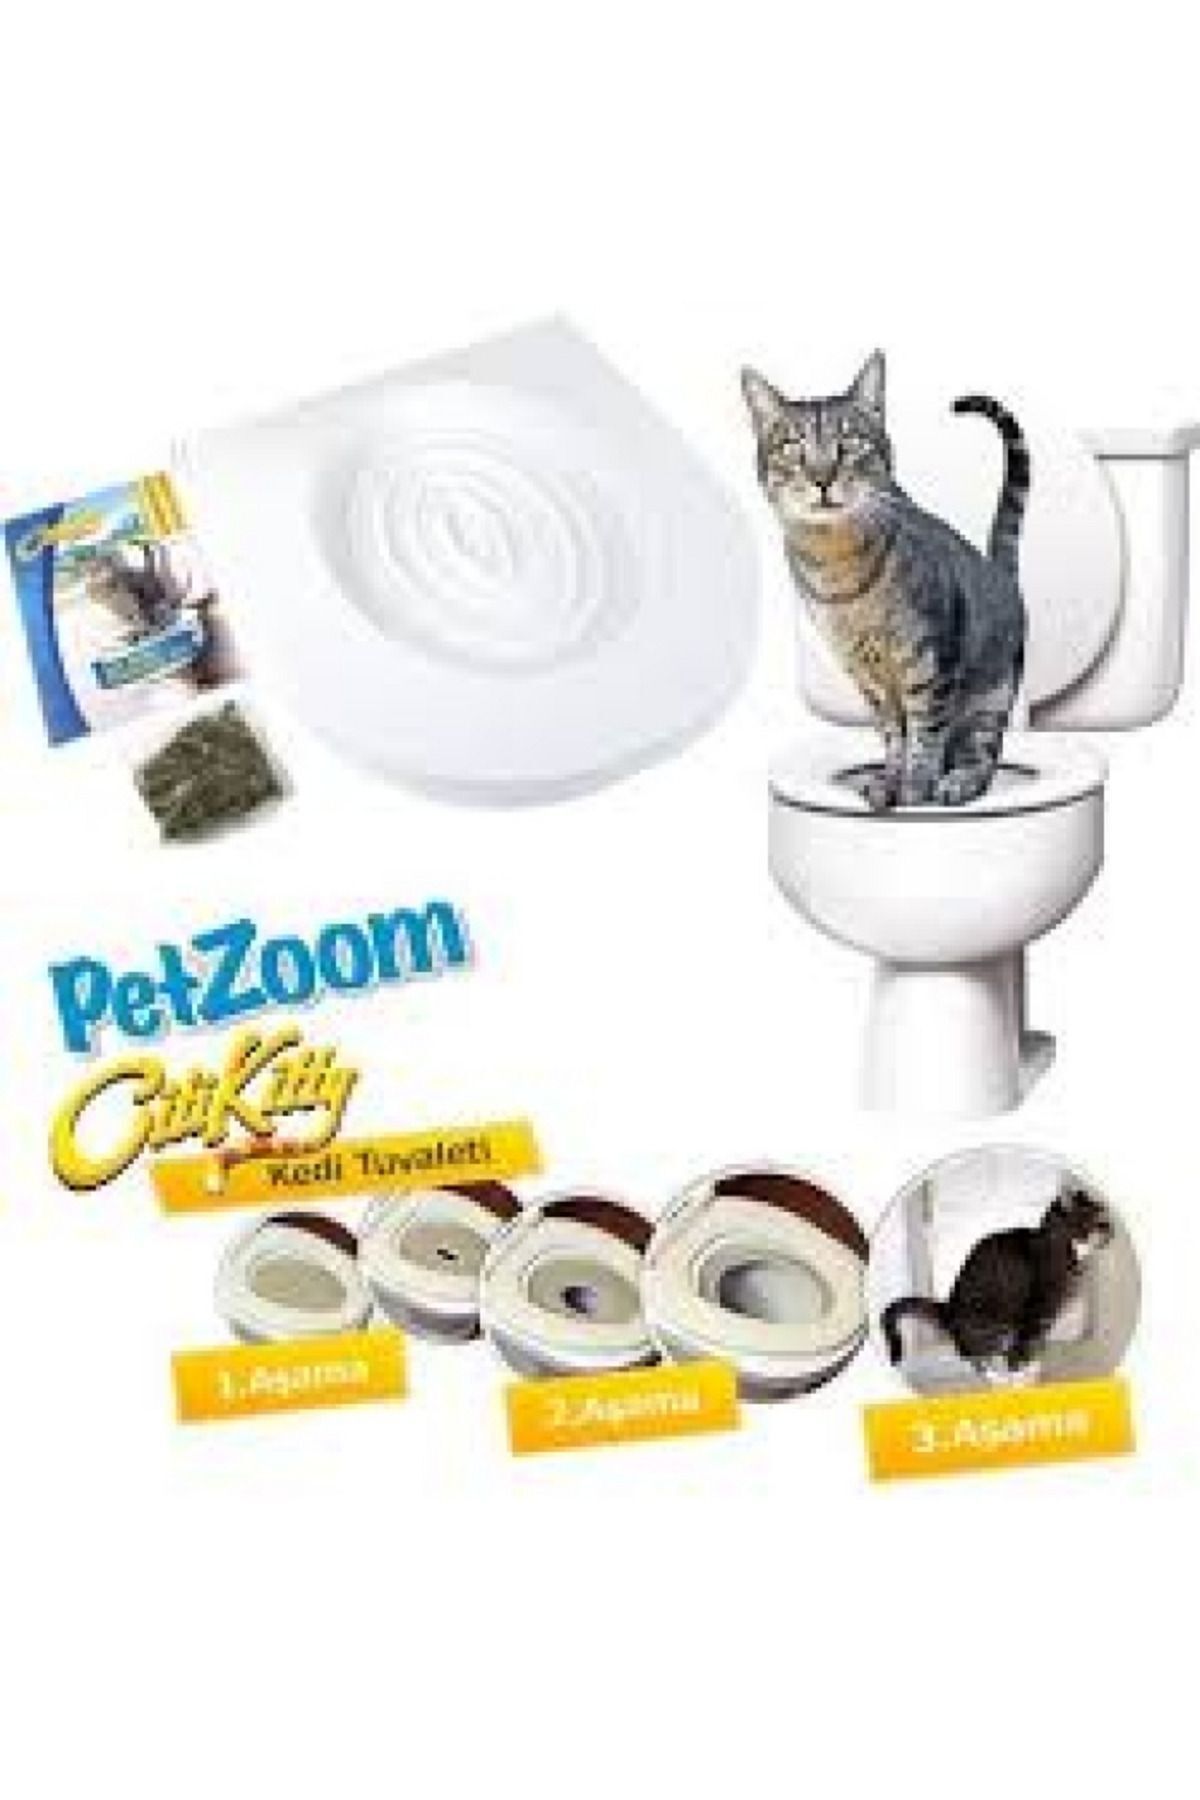 grey cat Premium Ürün Kedi Tuvalet Klozet Eğitim Seti Steril Hijyen Dayanıklı Sağlıklı Eğitici